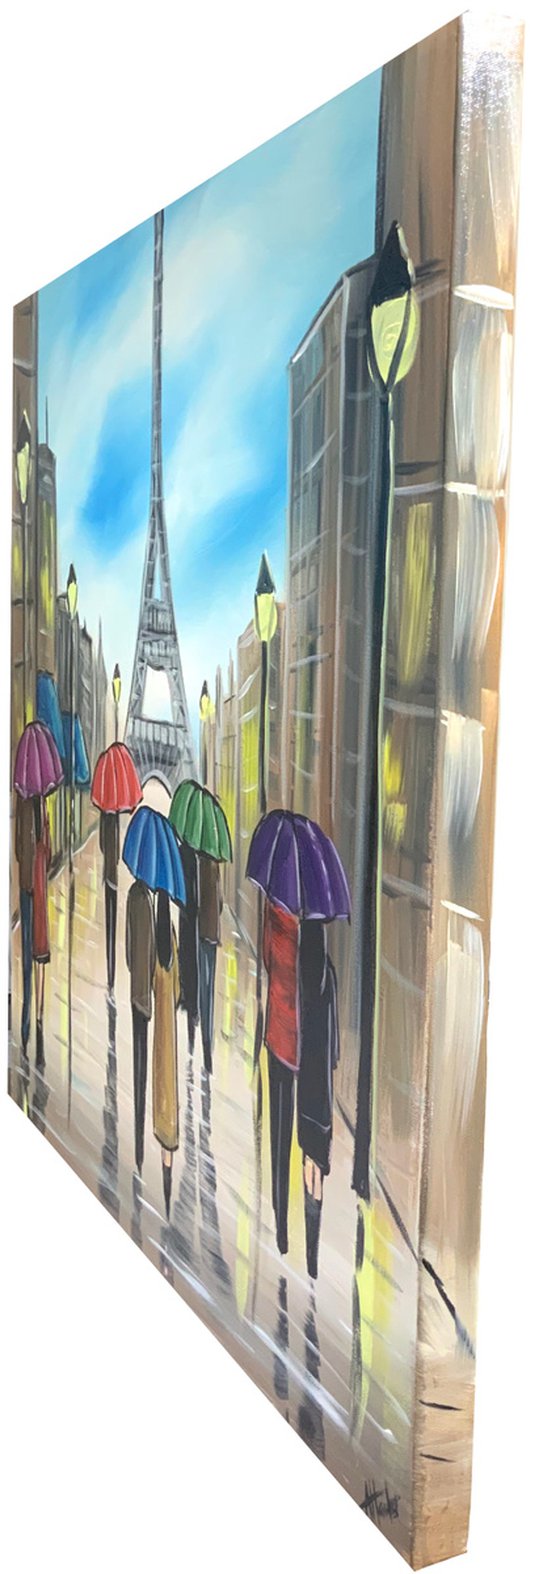 Colourful Paris Umbrellas